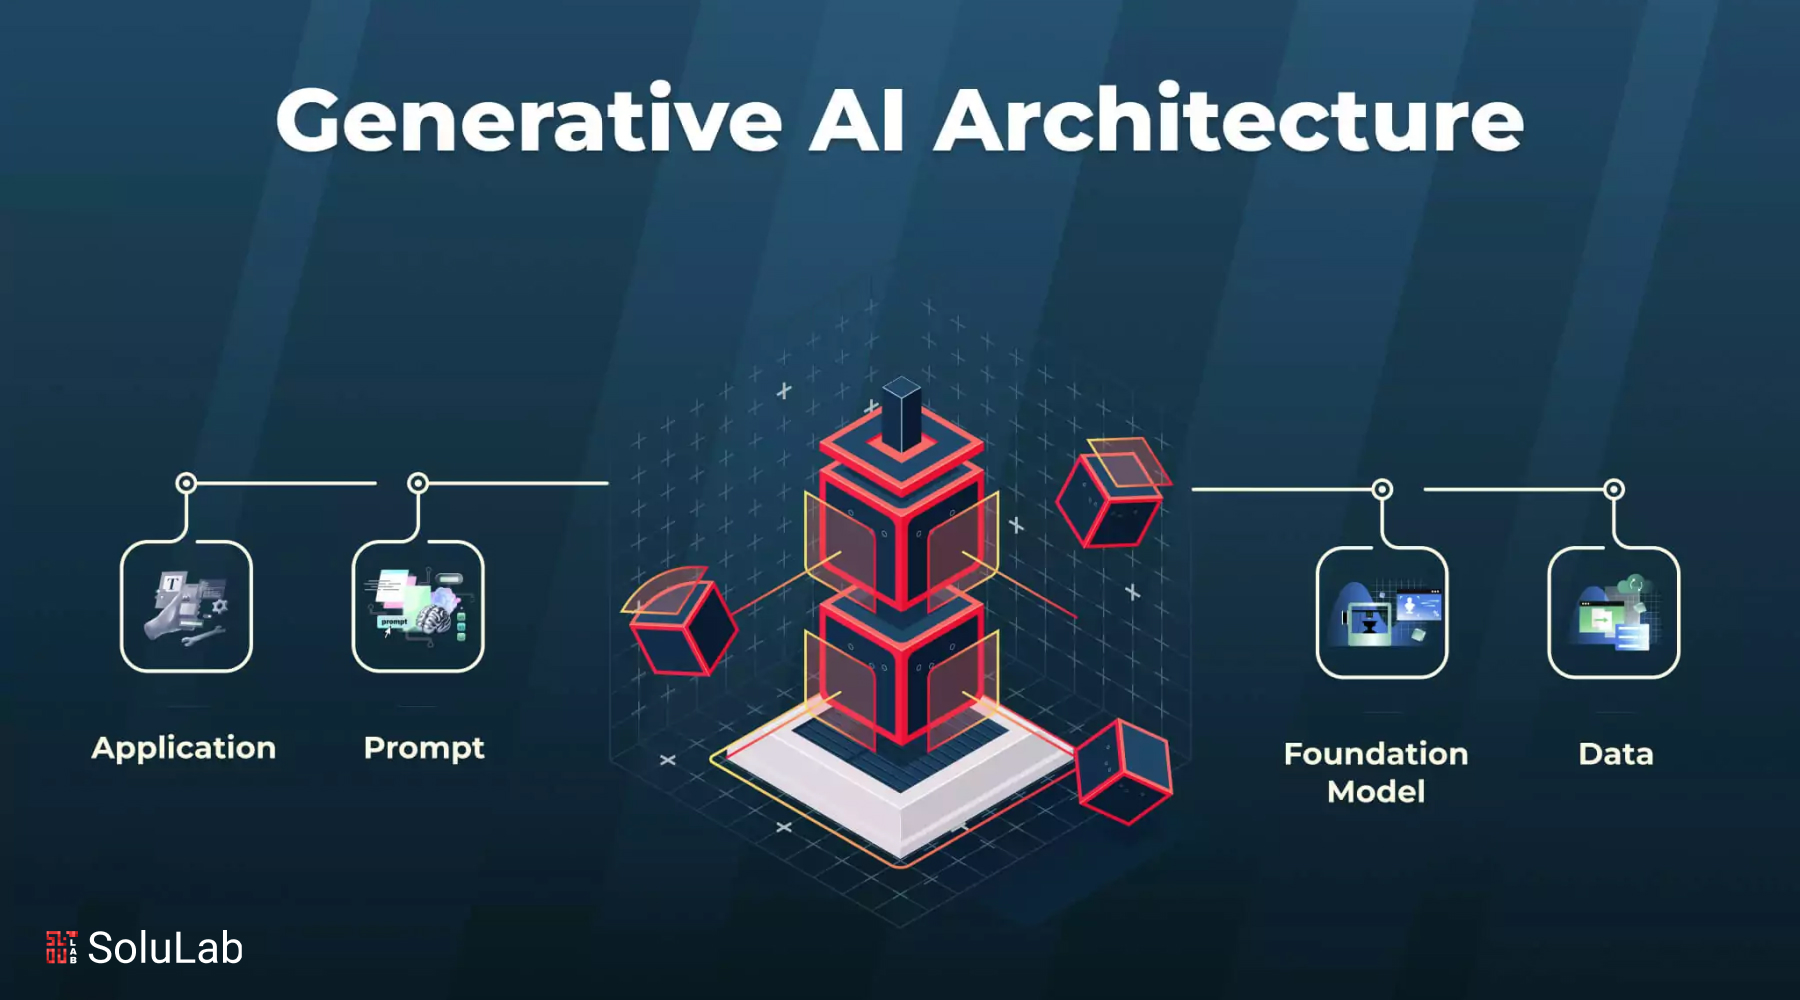 Guide to Generative AI Architecture